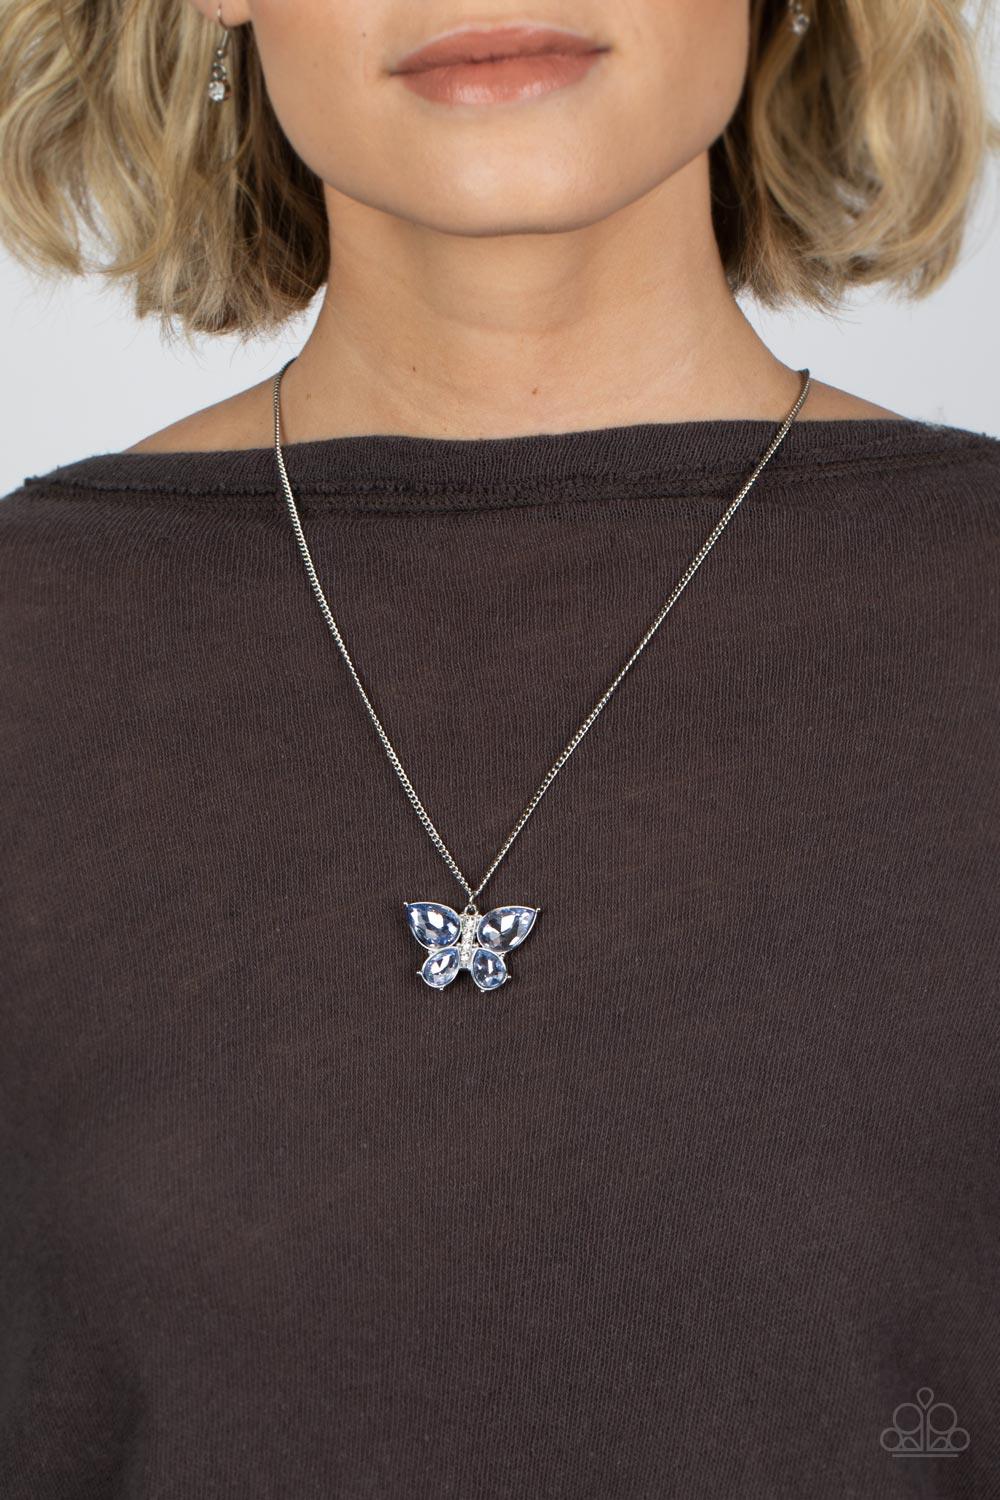 Free-Flying Flutter Blue Butterfly Necklace and Bracelet Set - Jewelry by bretta - Jewelry by Bretta